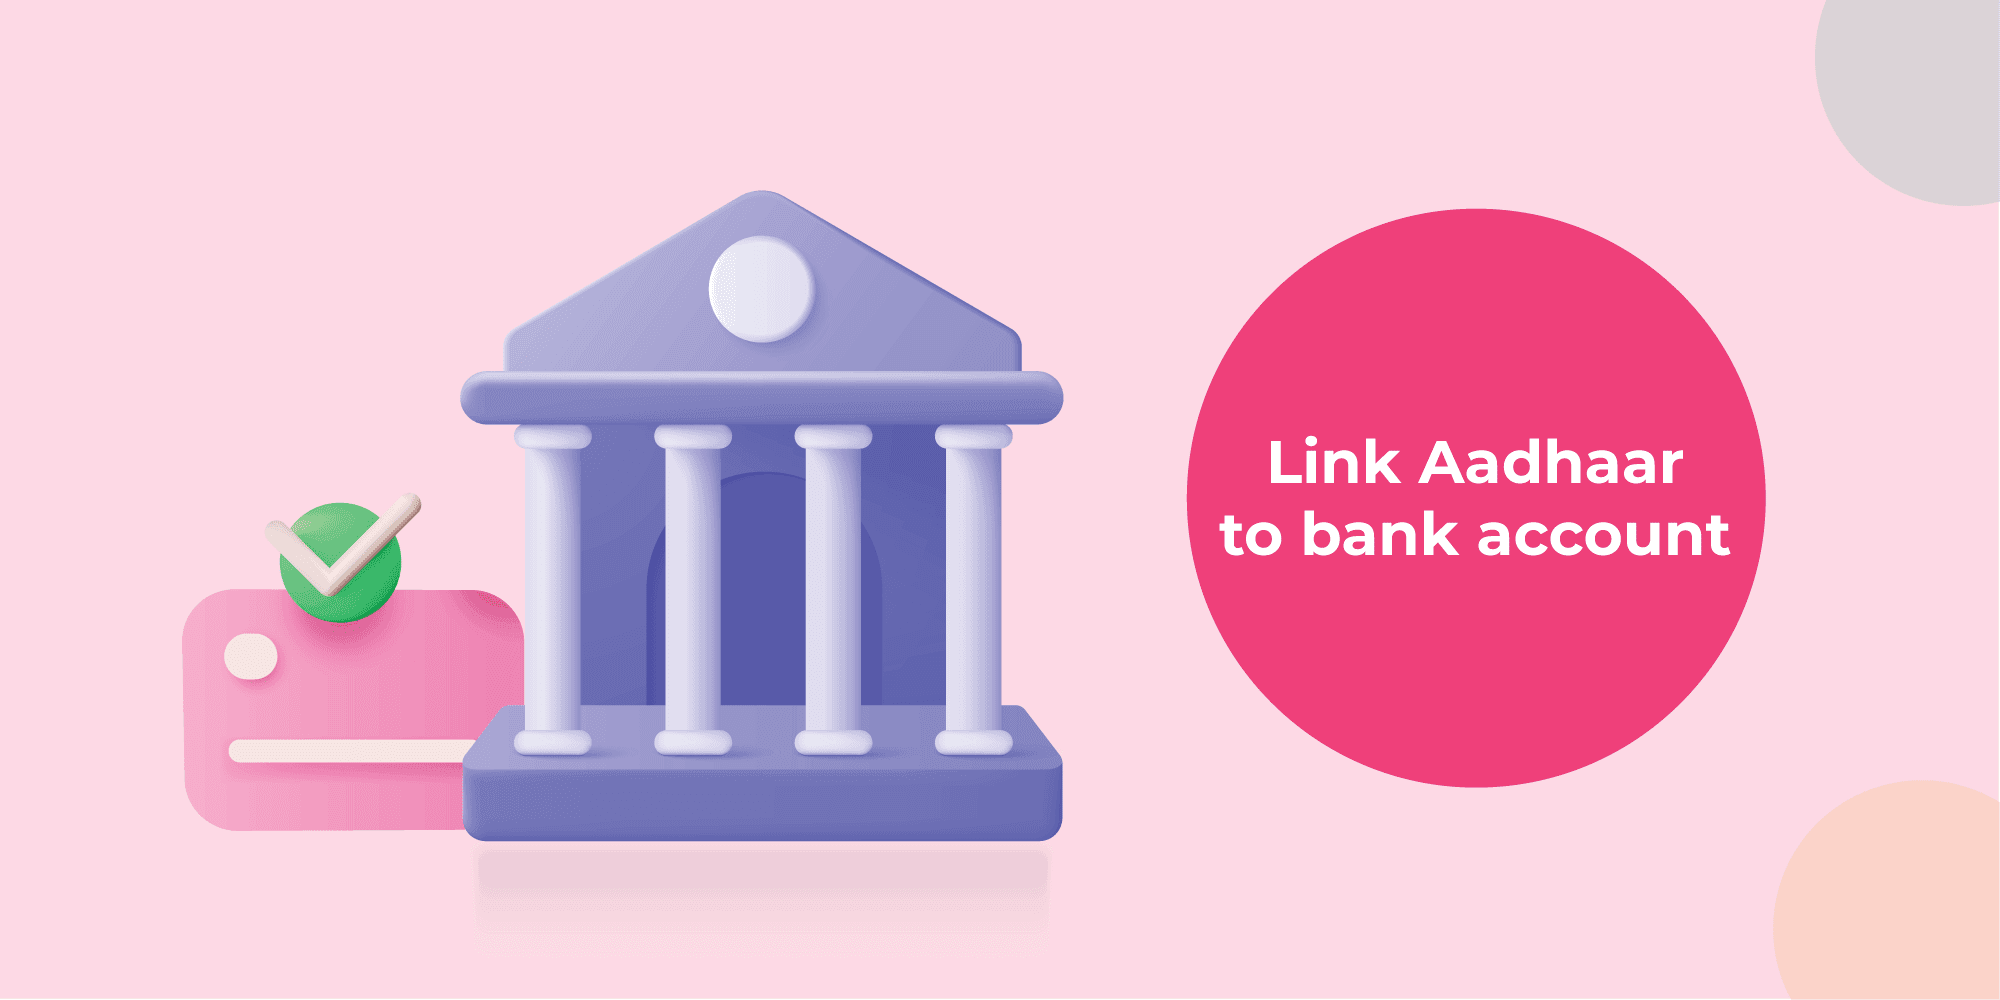 Link Aadhaar with a bank account online or offline in 6 easy ways